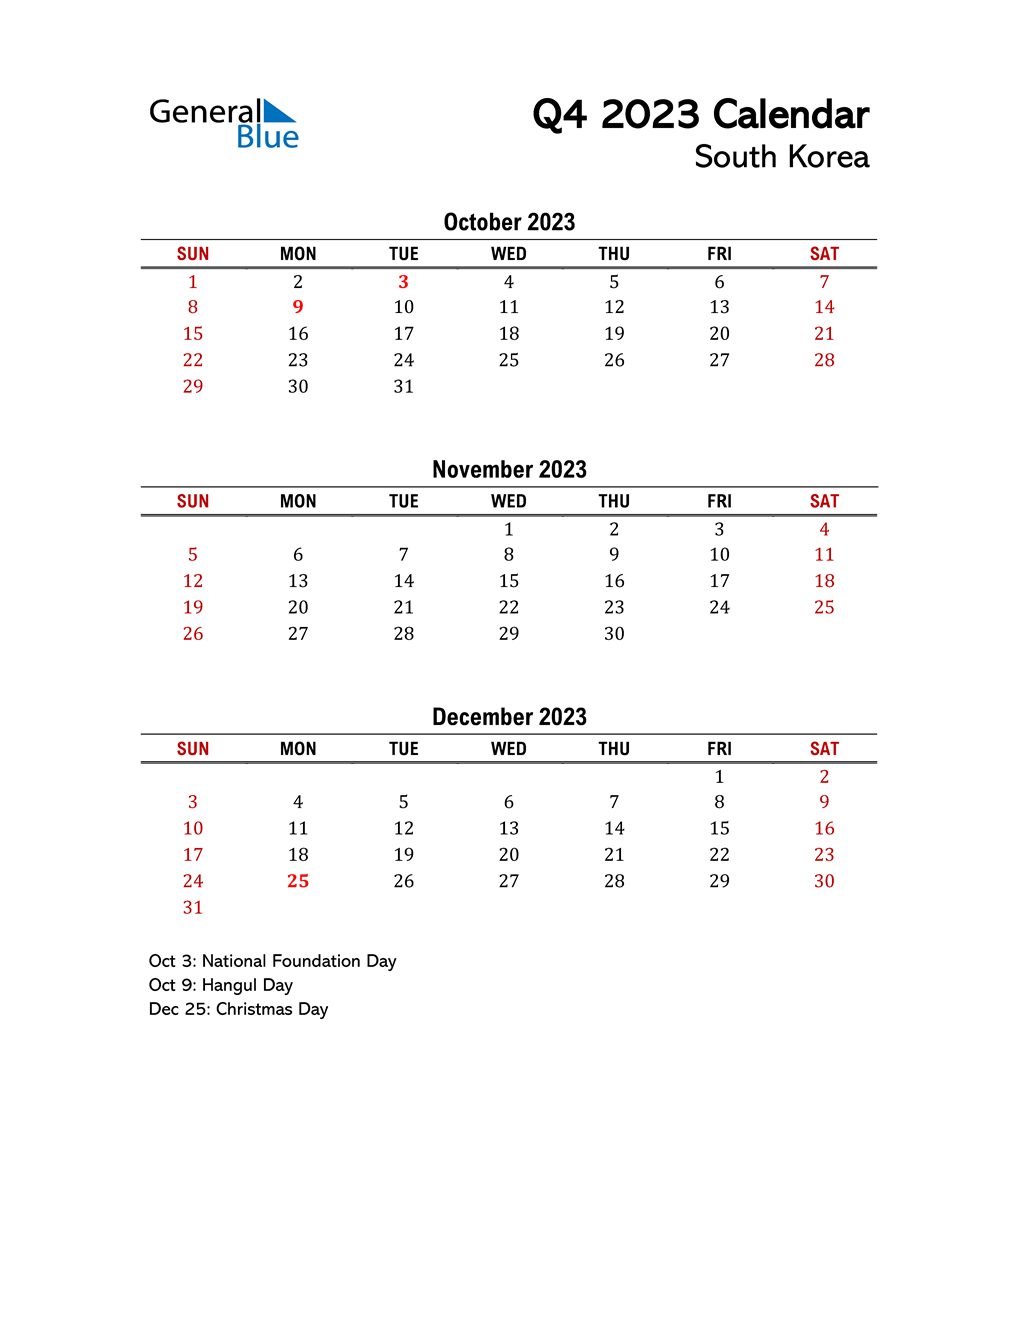 Q4 2023 Quarterly Calendar with South Korea Holidays